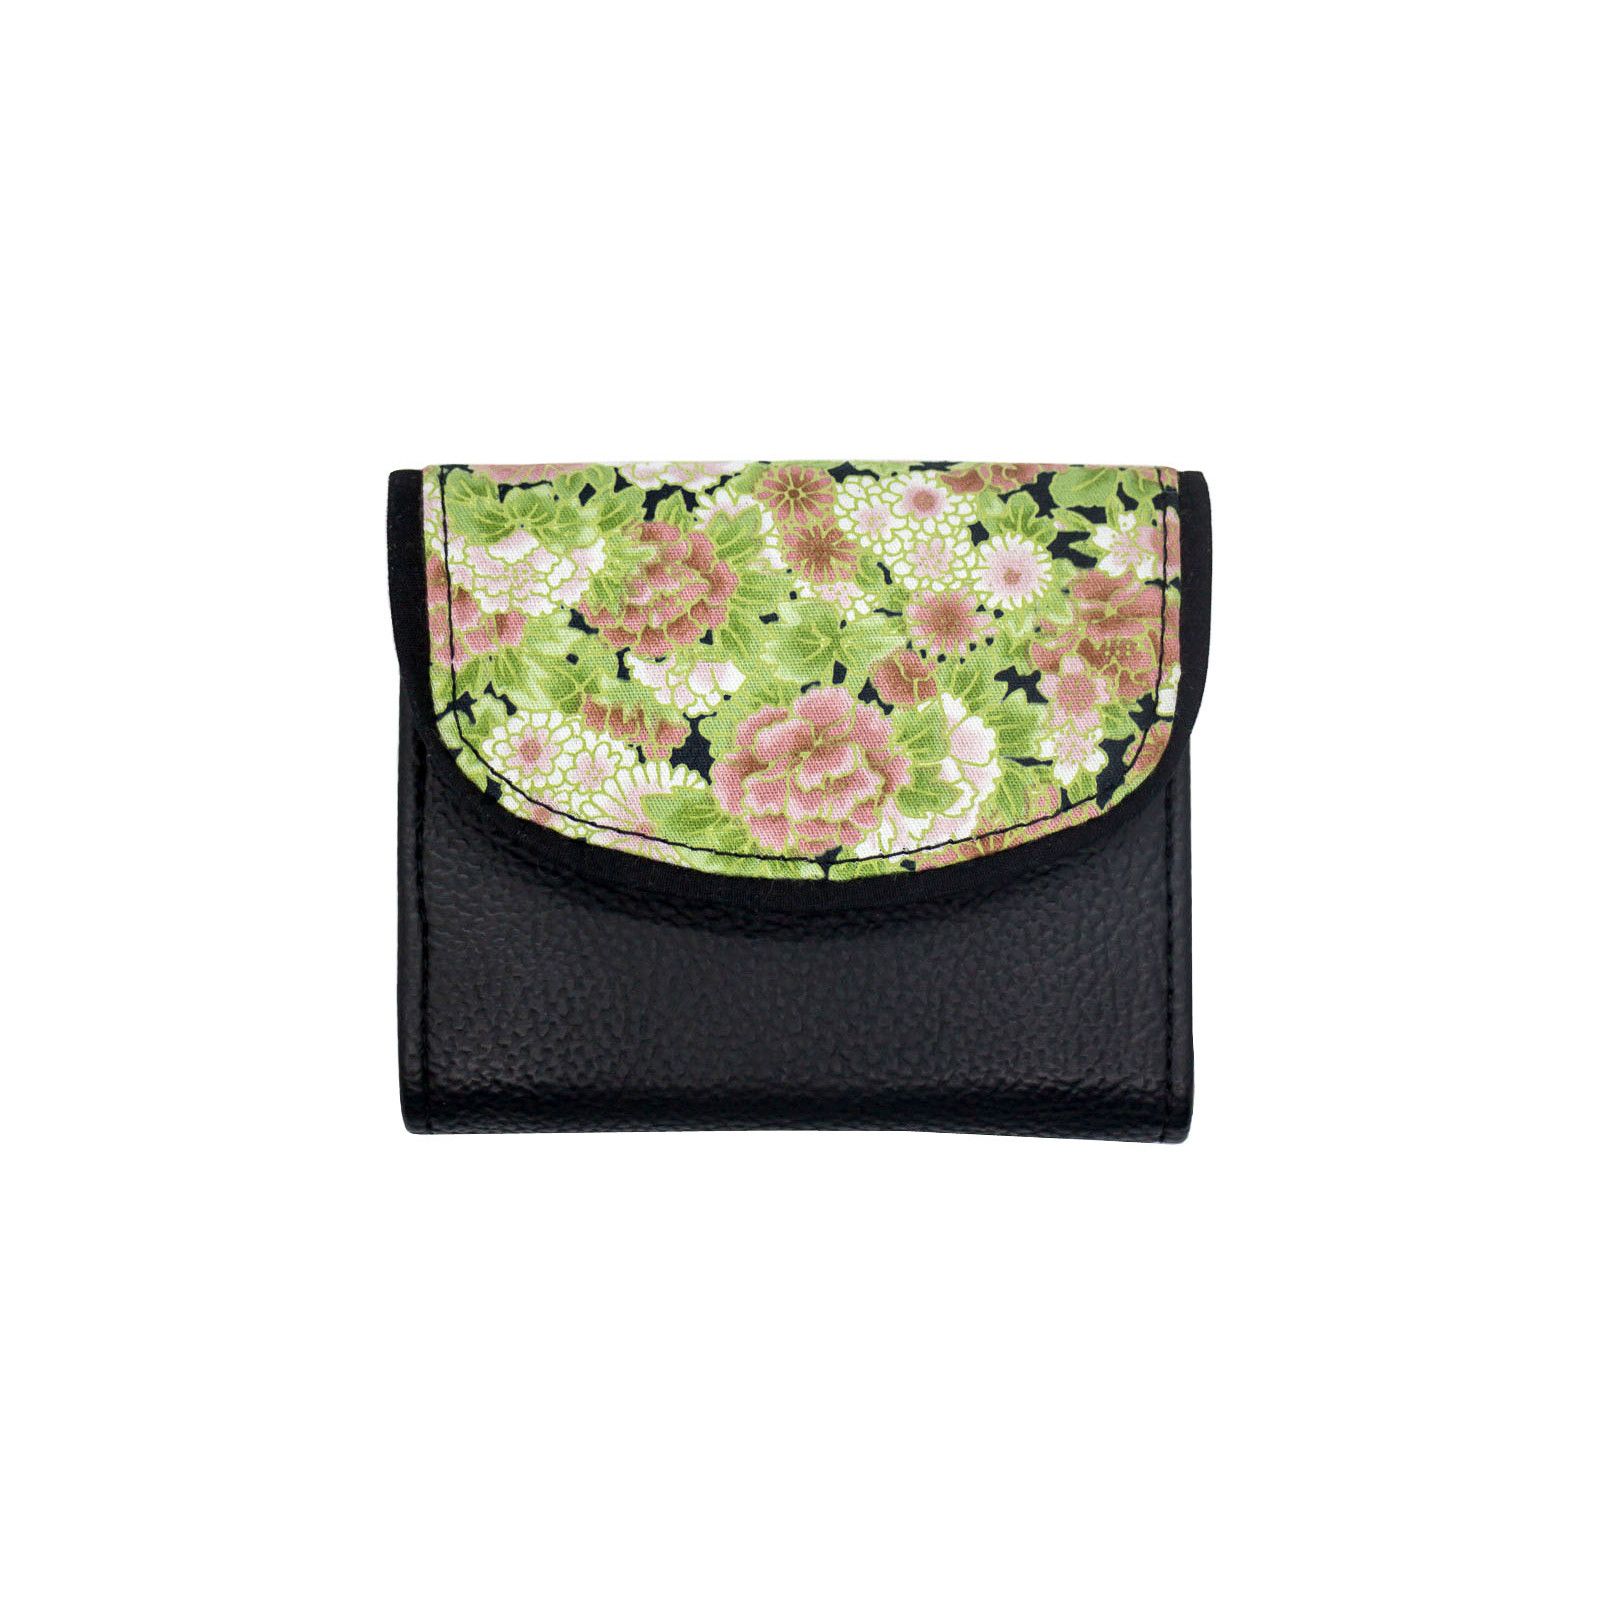 Portefeuille petit format original noir et fleurs rose vert pâle